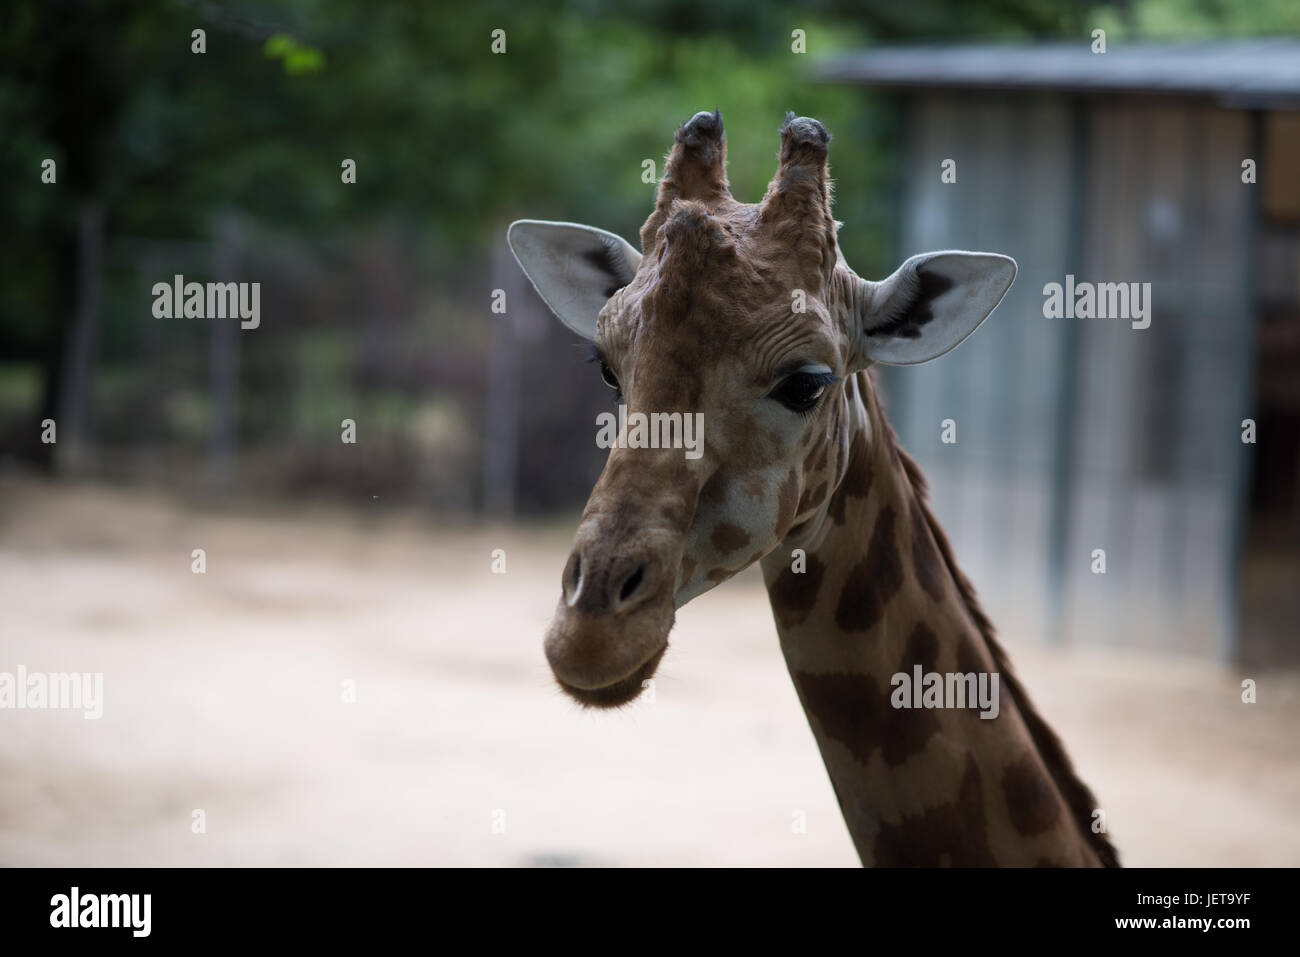 giraffe Stock Photo